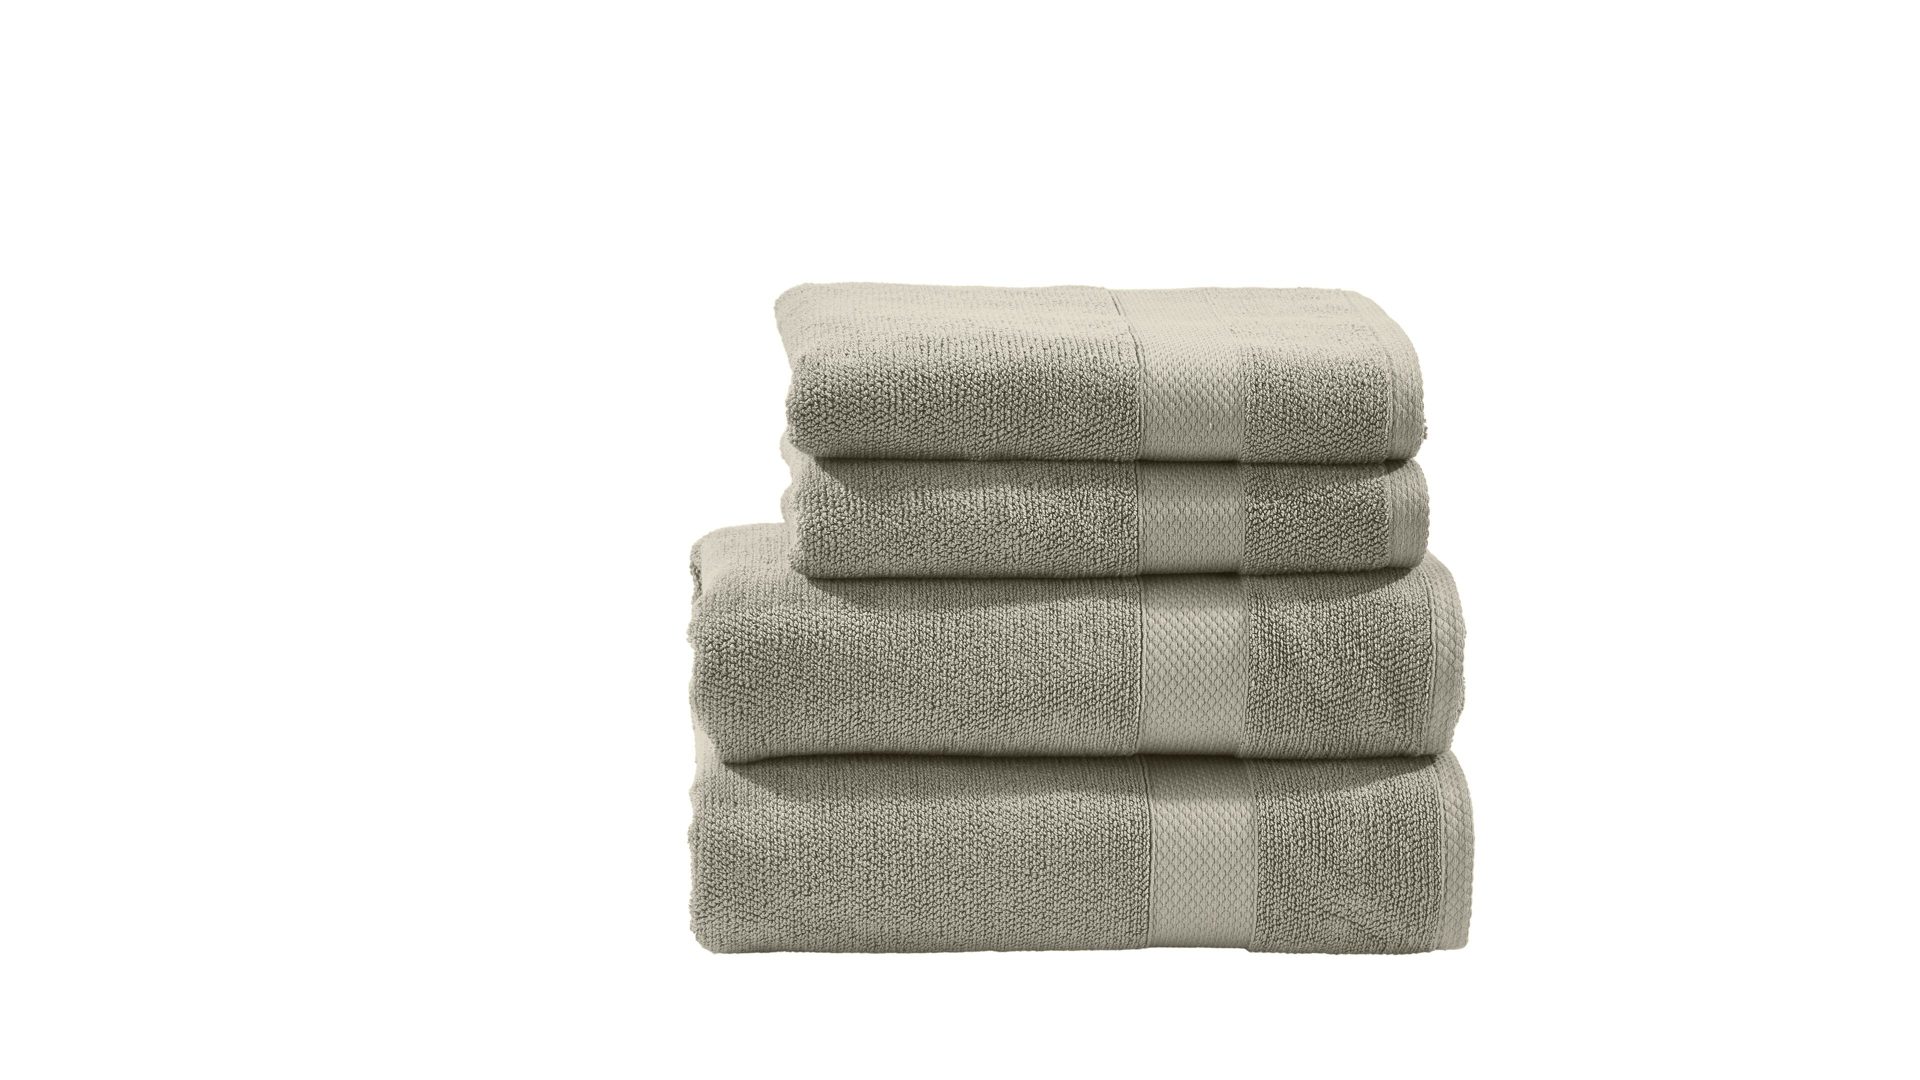 Handtuch-Set Done.® aus Stoff in Beige done.® Handtuch-Set Deluxe für Ihre Heimtextilien taupefarbene Baumwolle – vierteilig